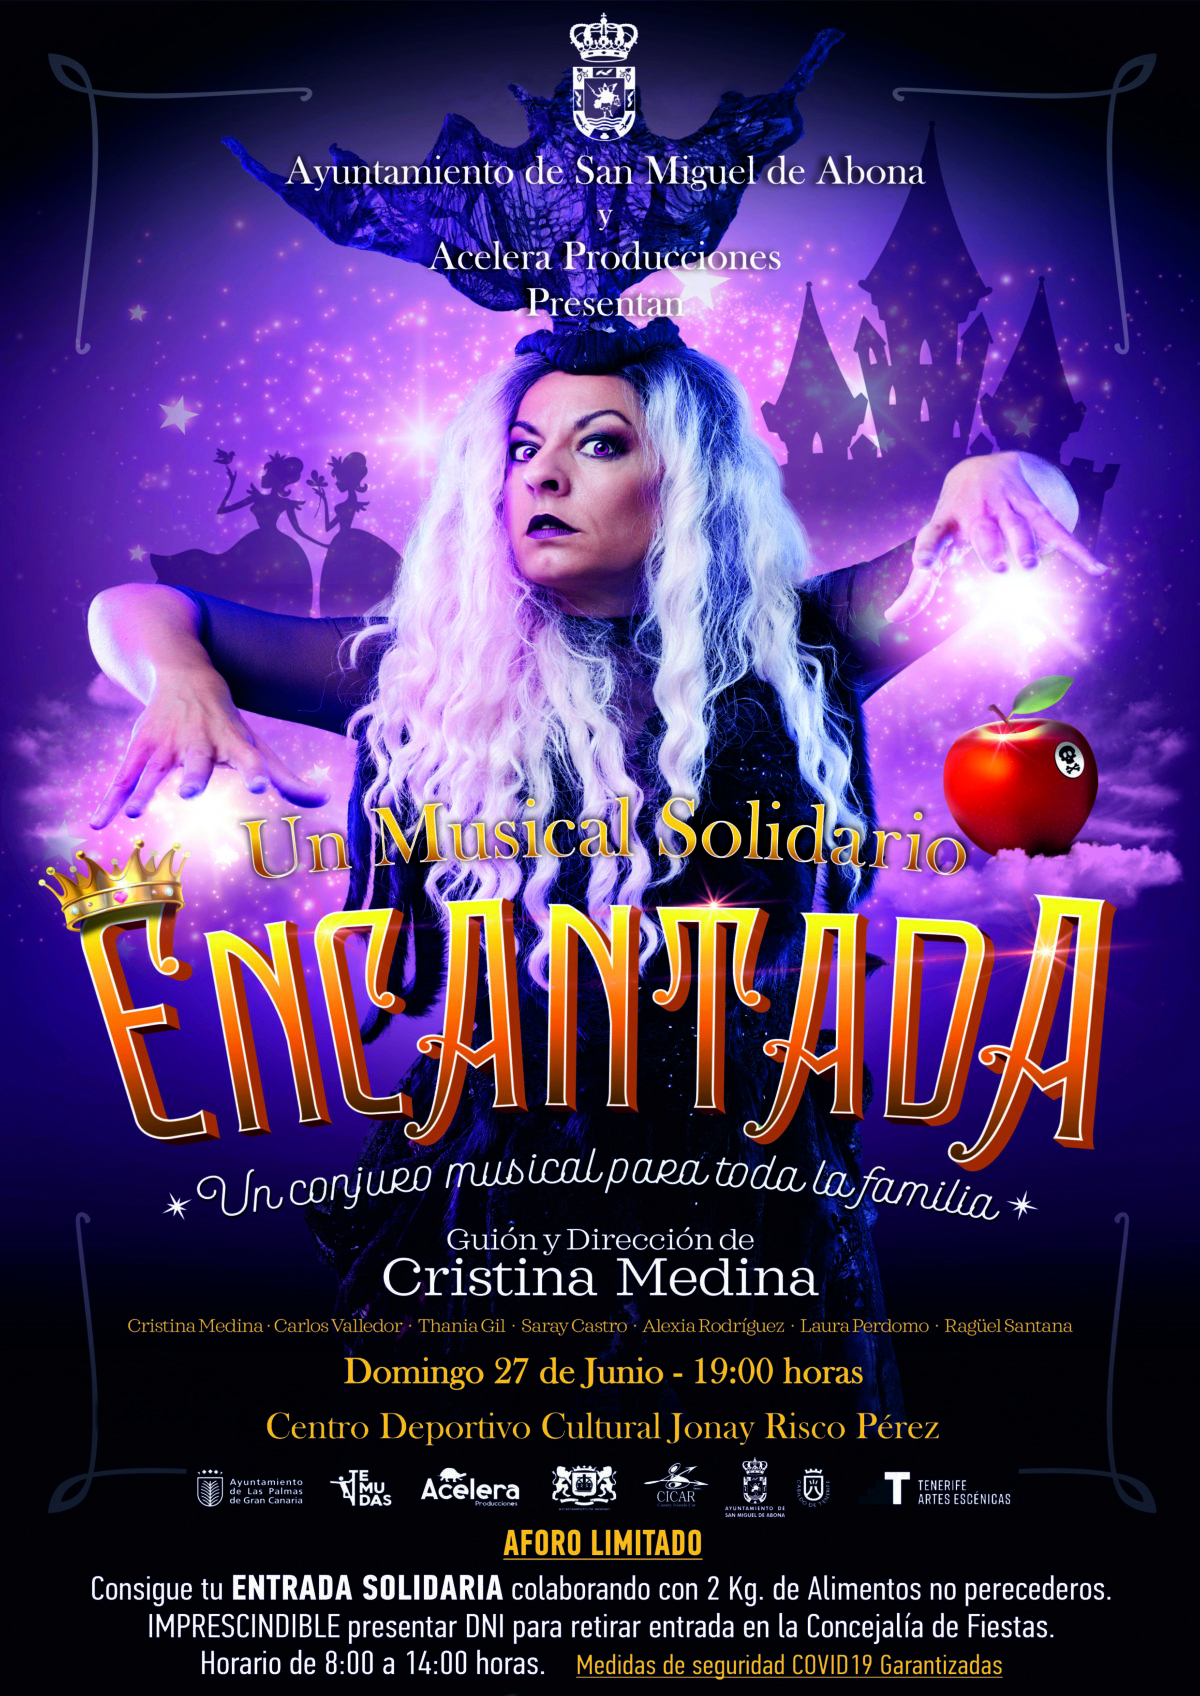 El musical solidario “ENCANTADA” estará el 27 de junio en San Miguel